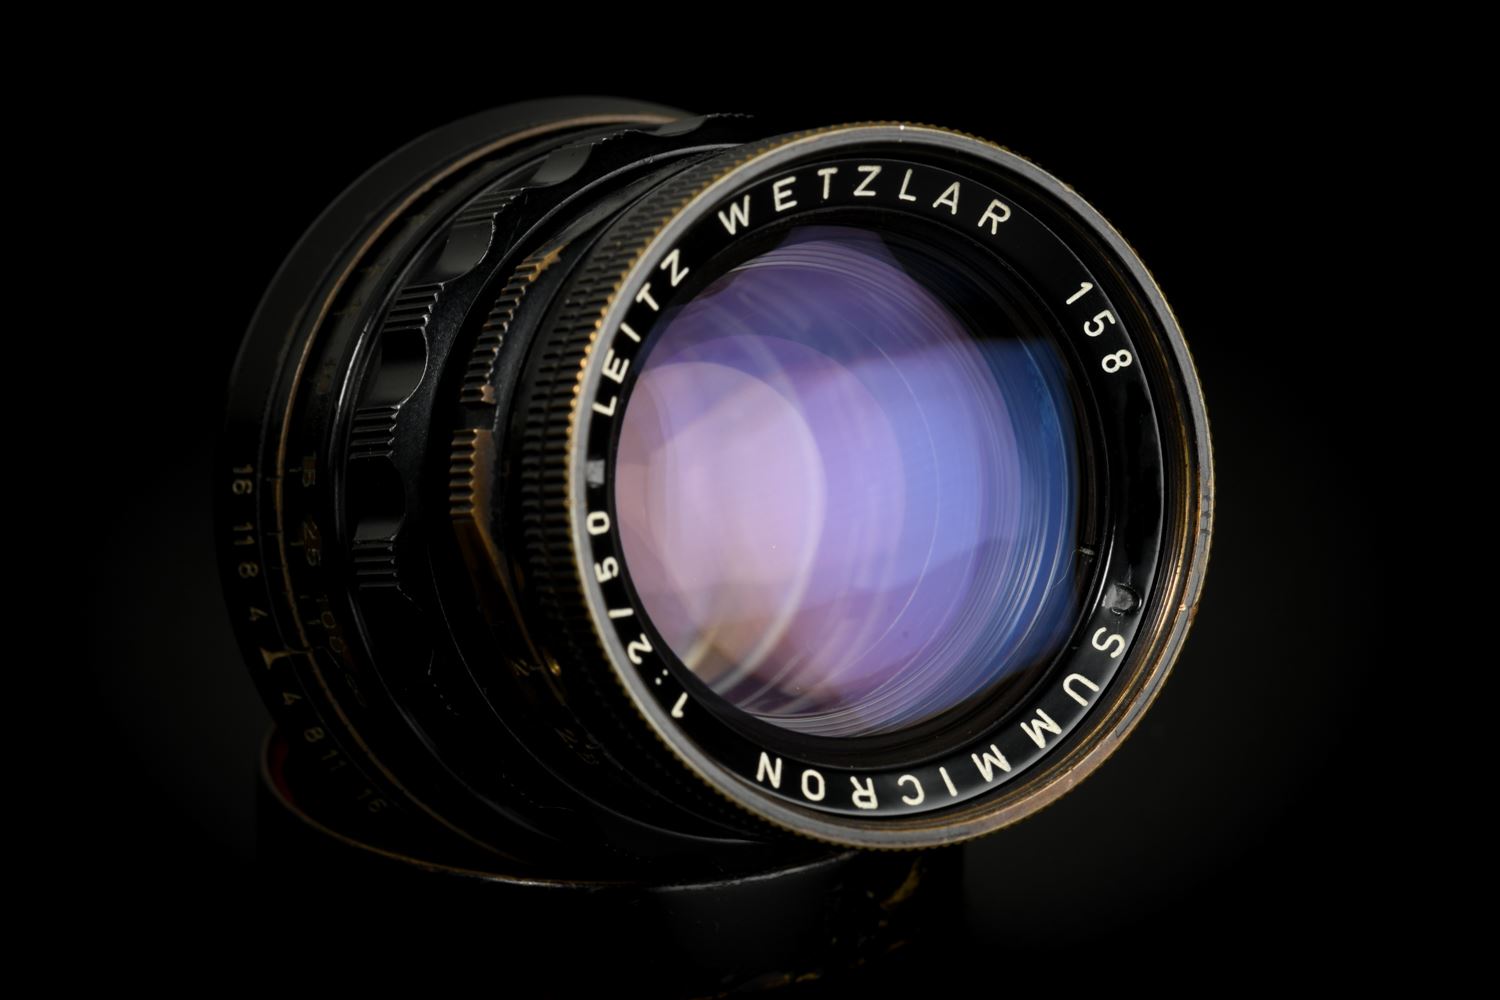 Picture of Leica Summicron-M 5cm f/2 Rigid Ver.1 Black Paint